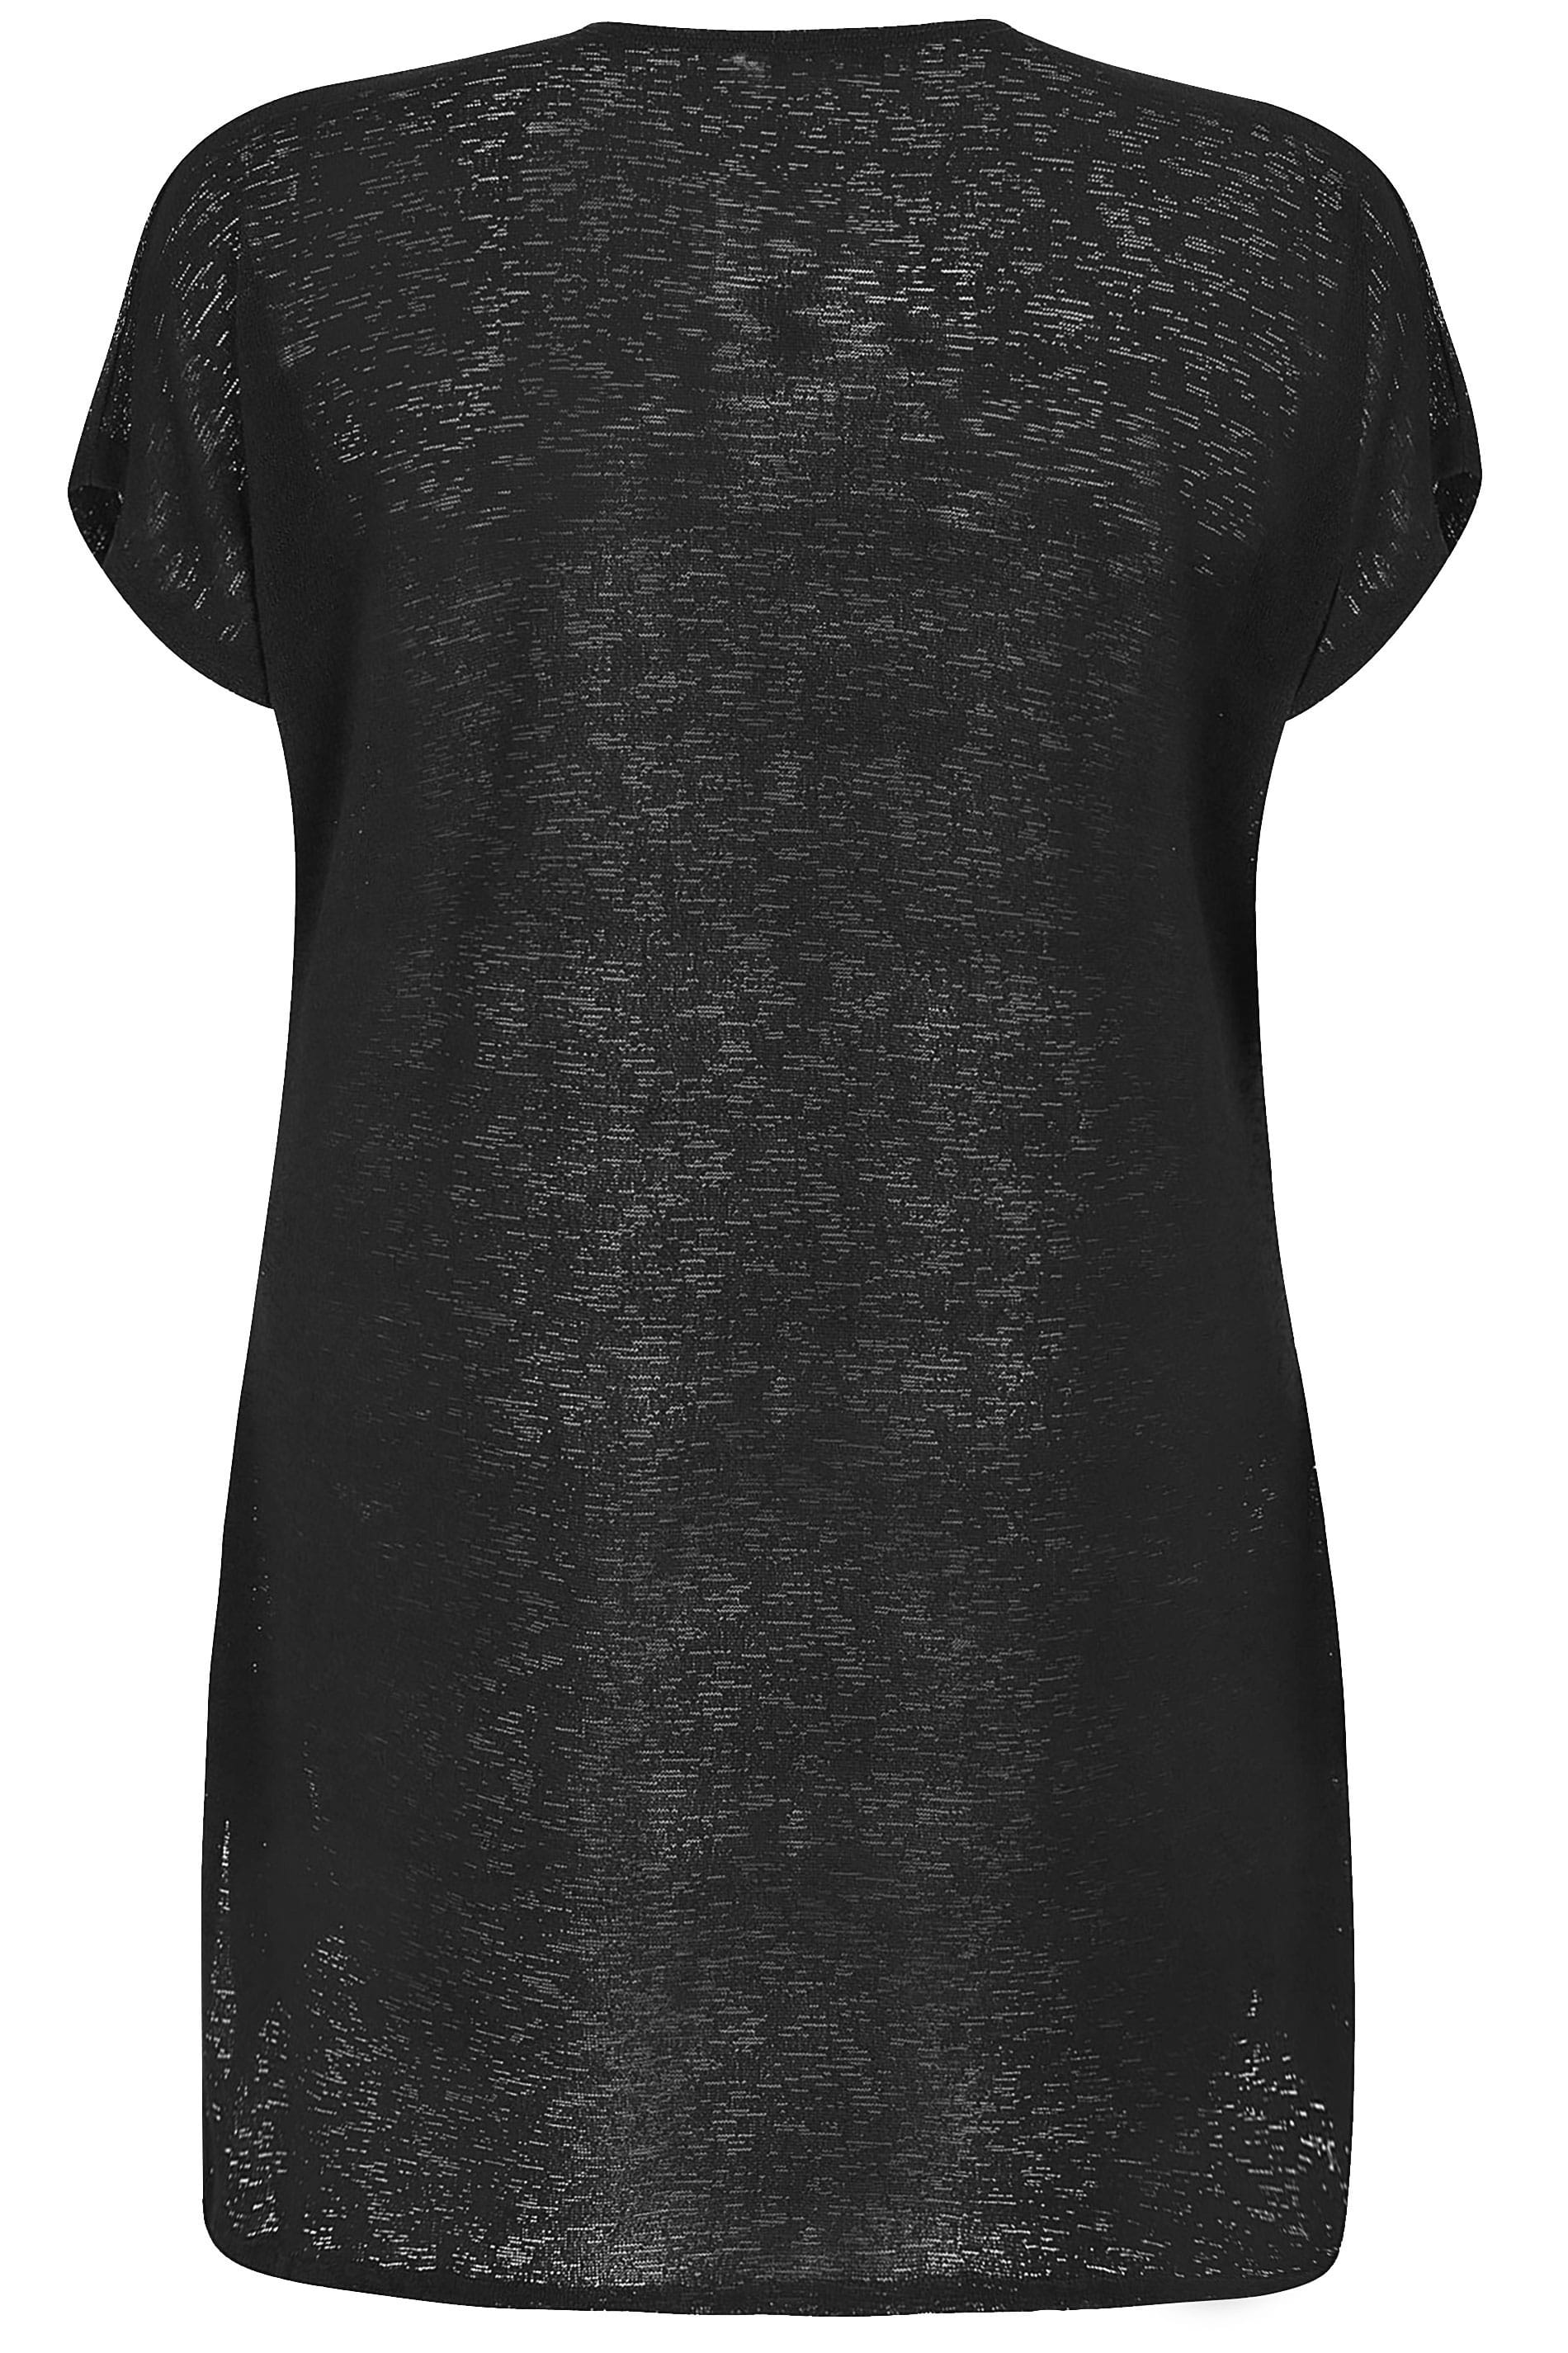 Black Short Sleeve Cardigan | Plus Sizes 16 to 36 | Yours Clothing